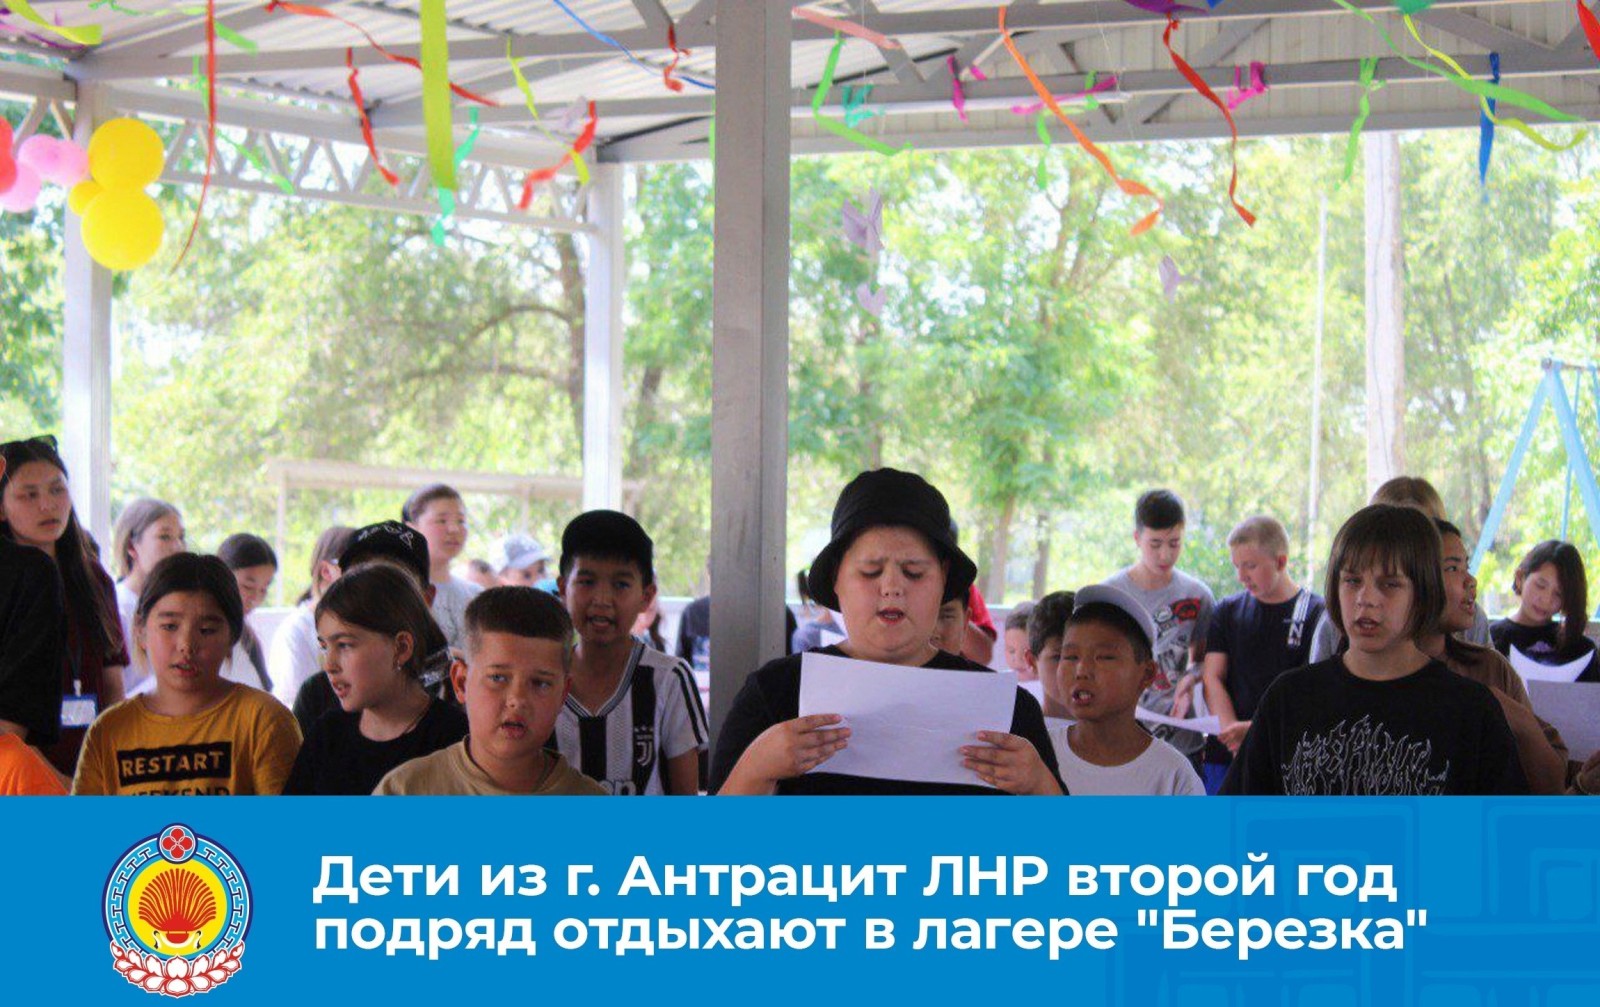 В оздоровительный лагерь "Березка" Городовиковского района прибыли дети из подшефного Антрацитовского района ЛНР